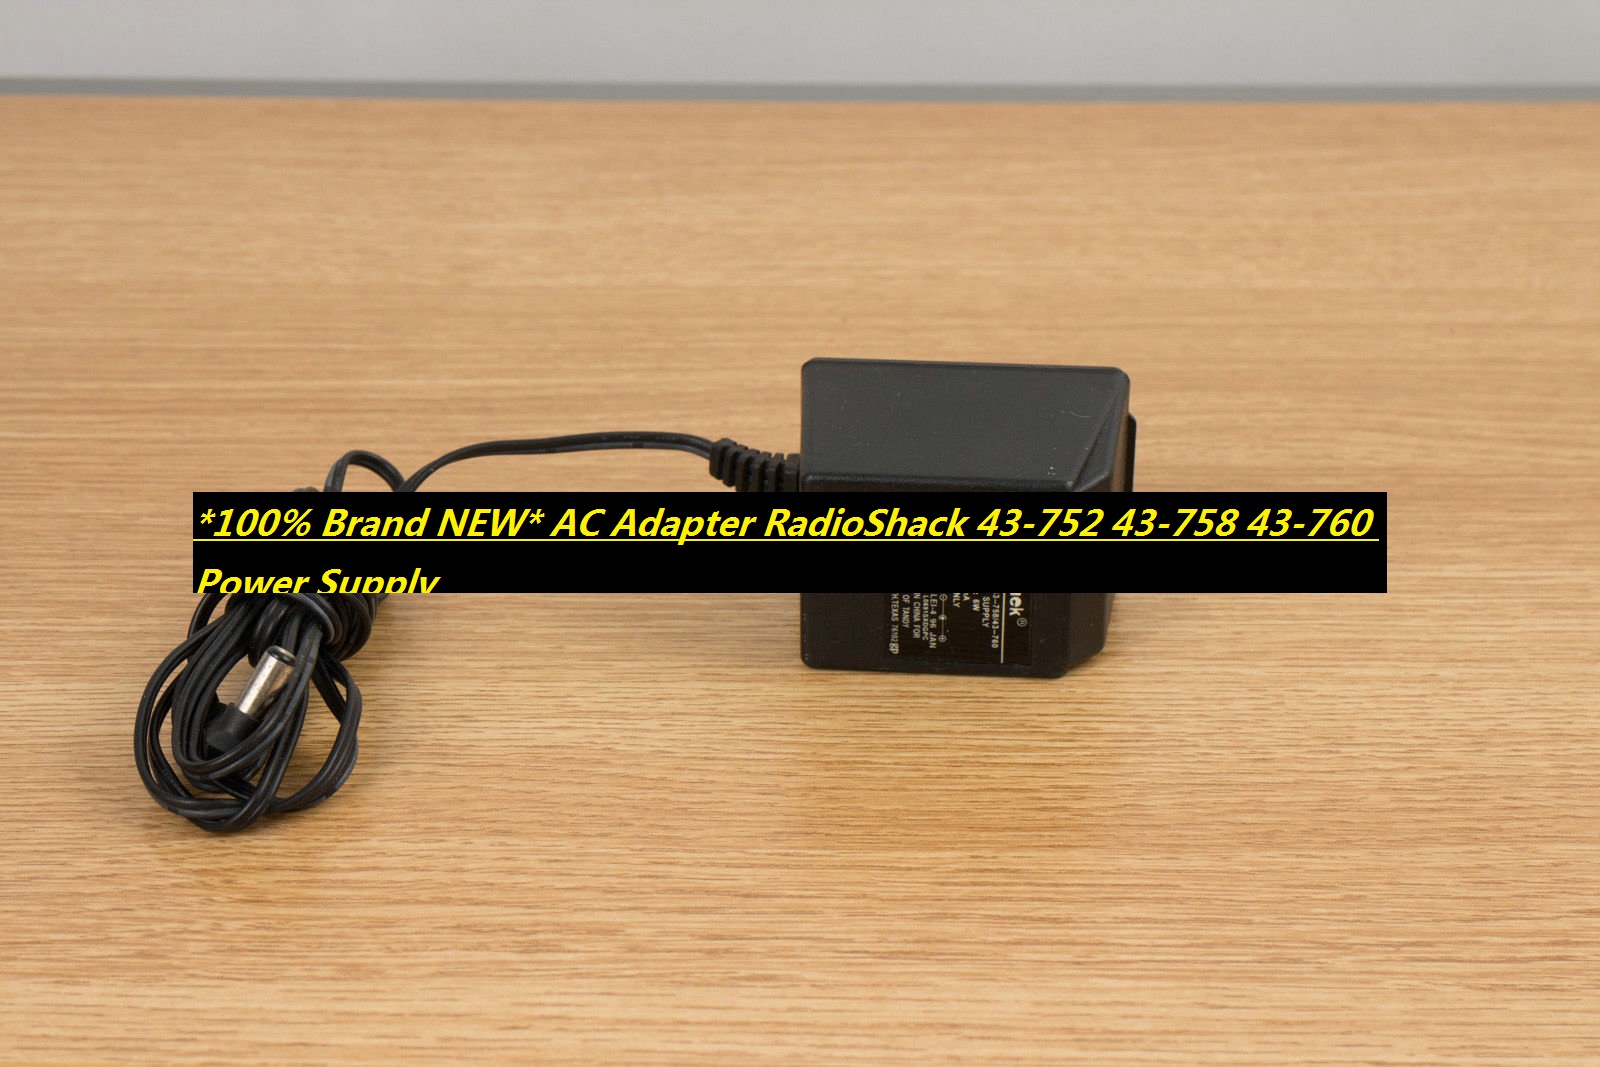 *100% Brand NEW* AC Adapter RadioShack 43-752 43-758 43-760 Power Supply